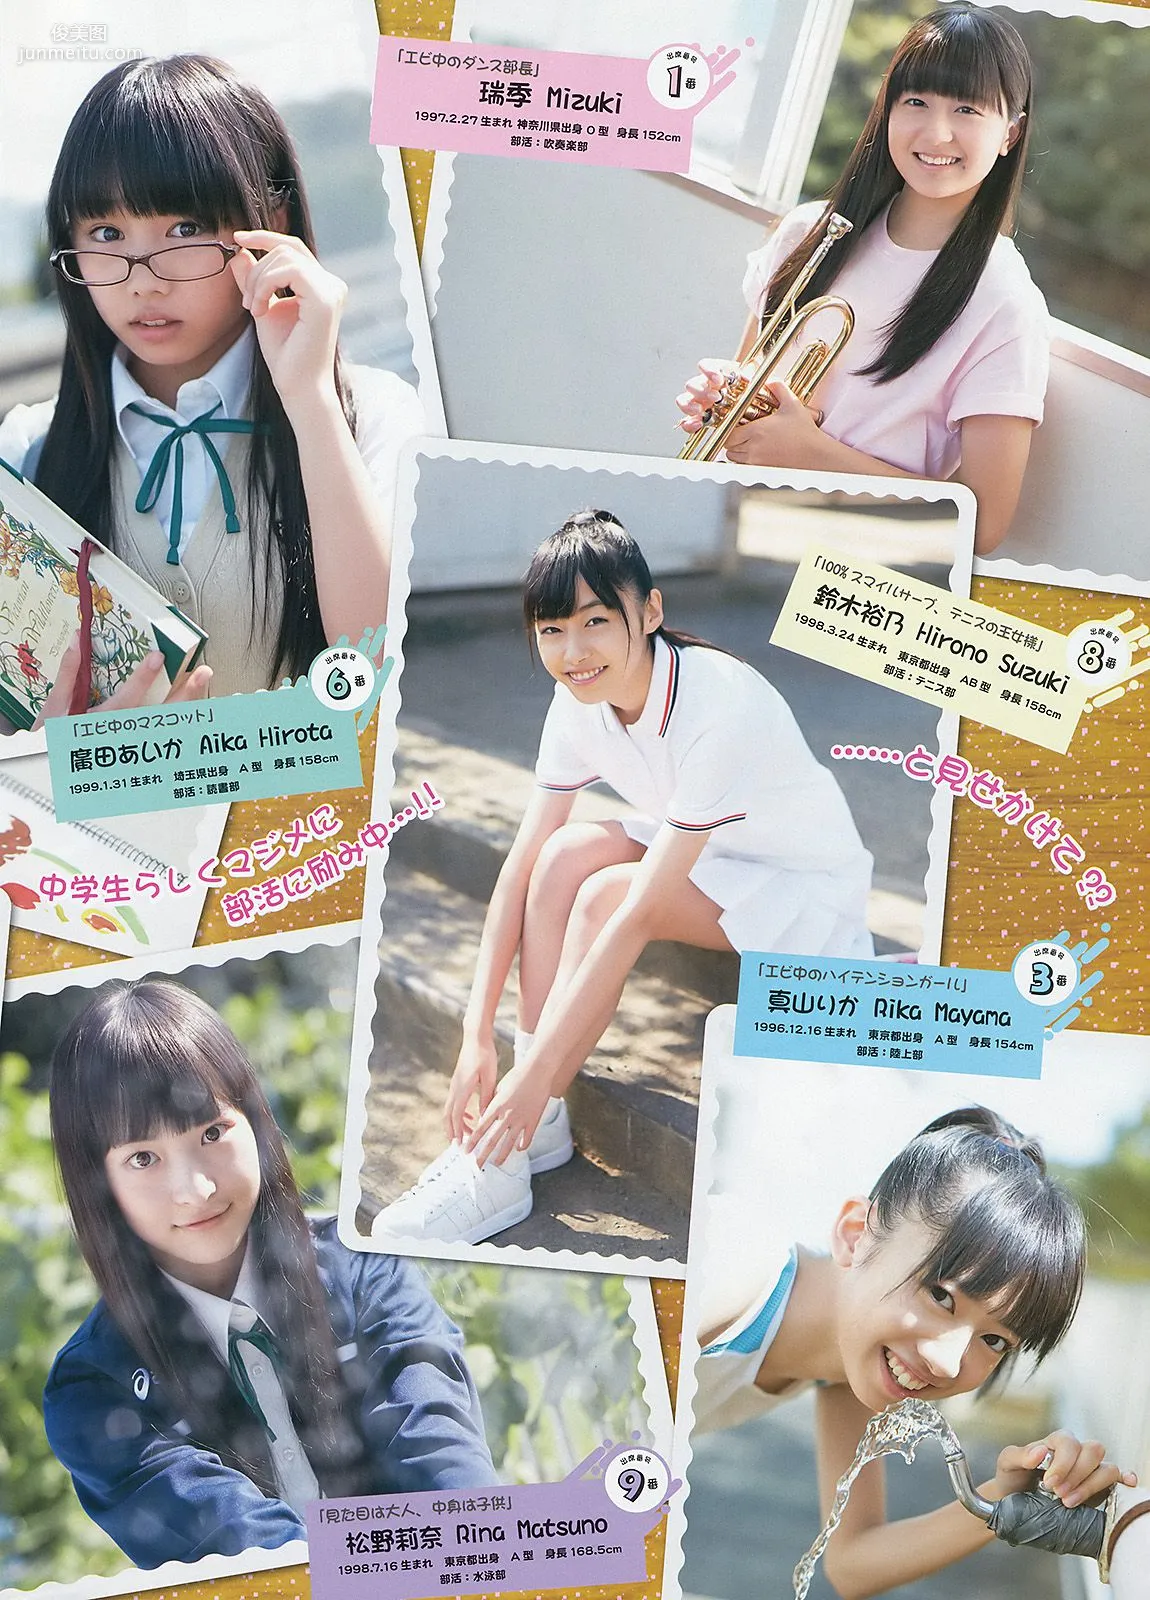 橋本奈々未 百川晴香 私立恵比寿中学 [Weekly Young Jump] 2013年No.51 写真杂志16